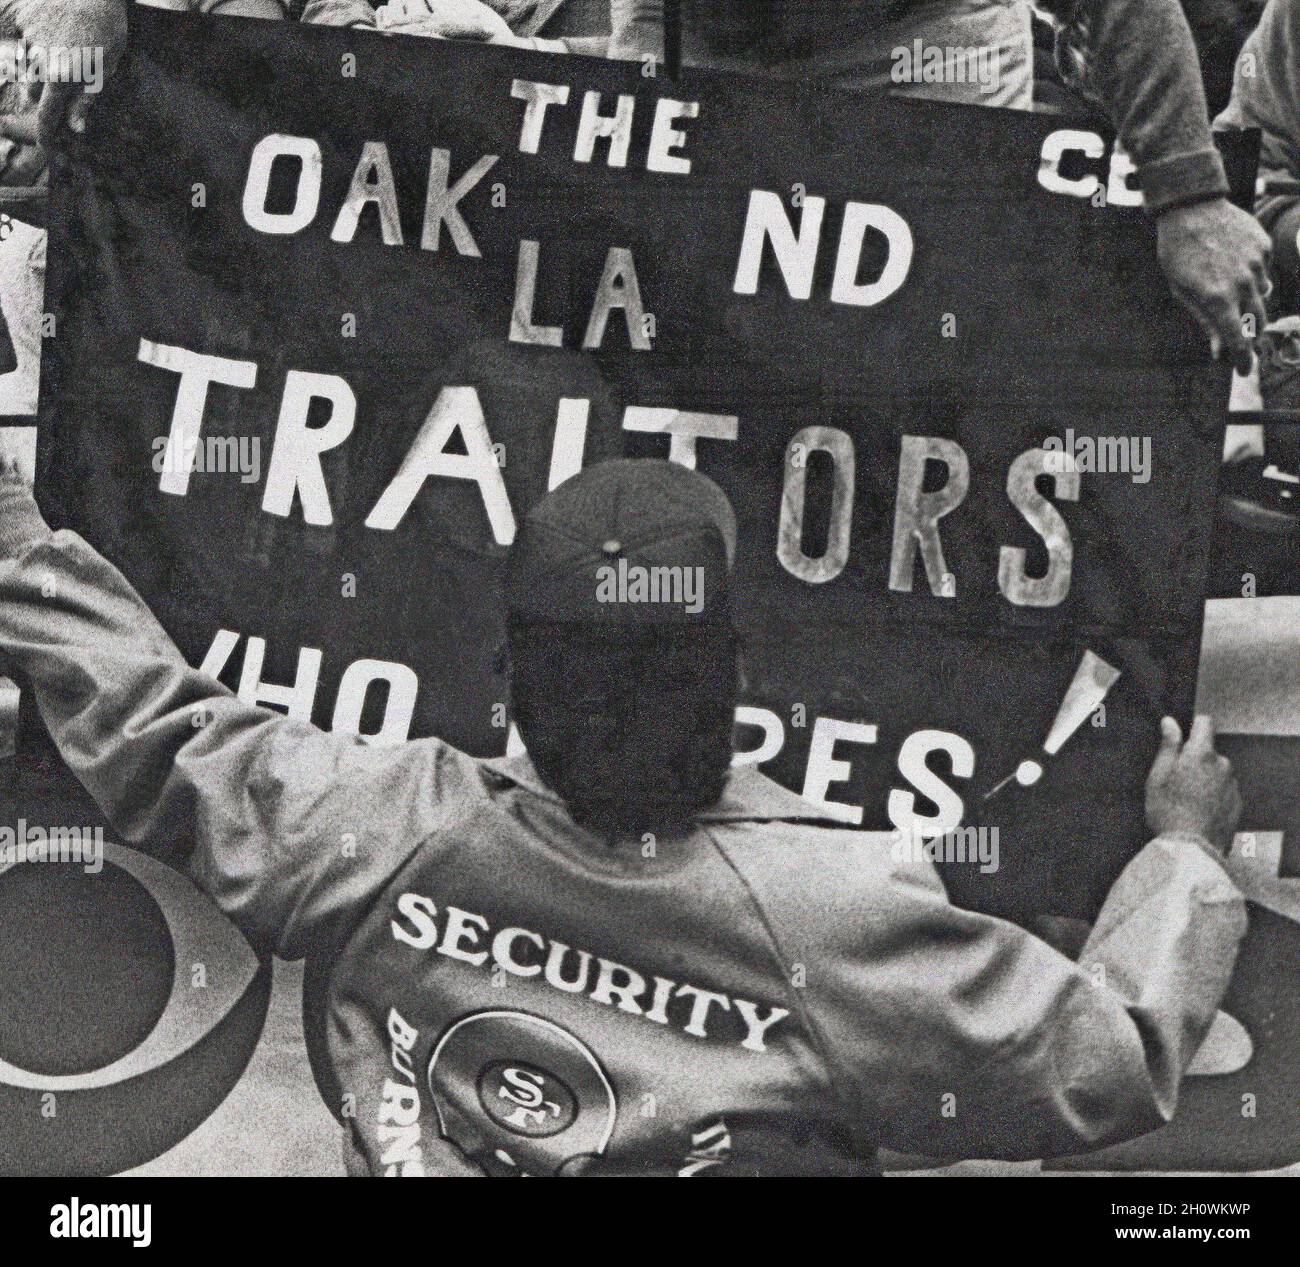 San Francisco 49ers, persona de seguridad del equipo de fútbol durante un partido contra los Raiders en el Candlestick Park de San Francisco quitando la bandera 'Oakland Traitors' después de que los Raiders se trasladaran de Oakland a Los Angeles, California, 1980s Foto de stock